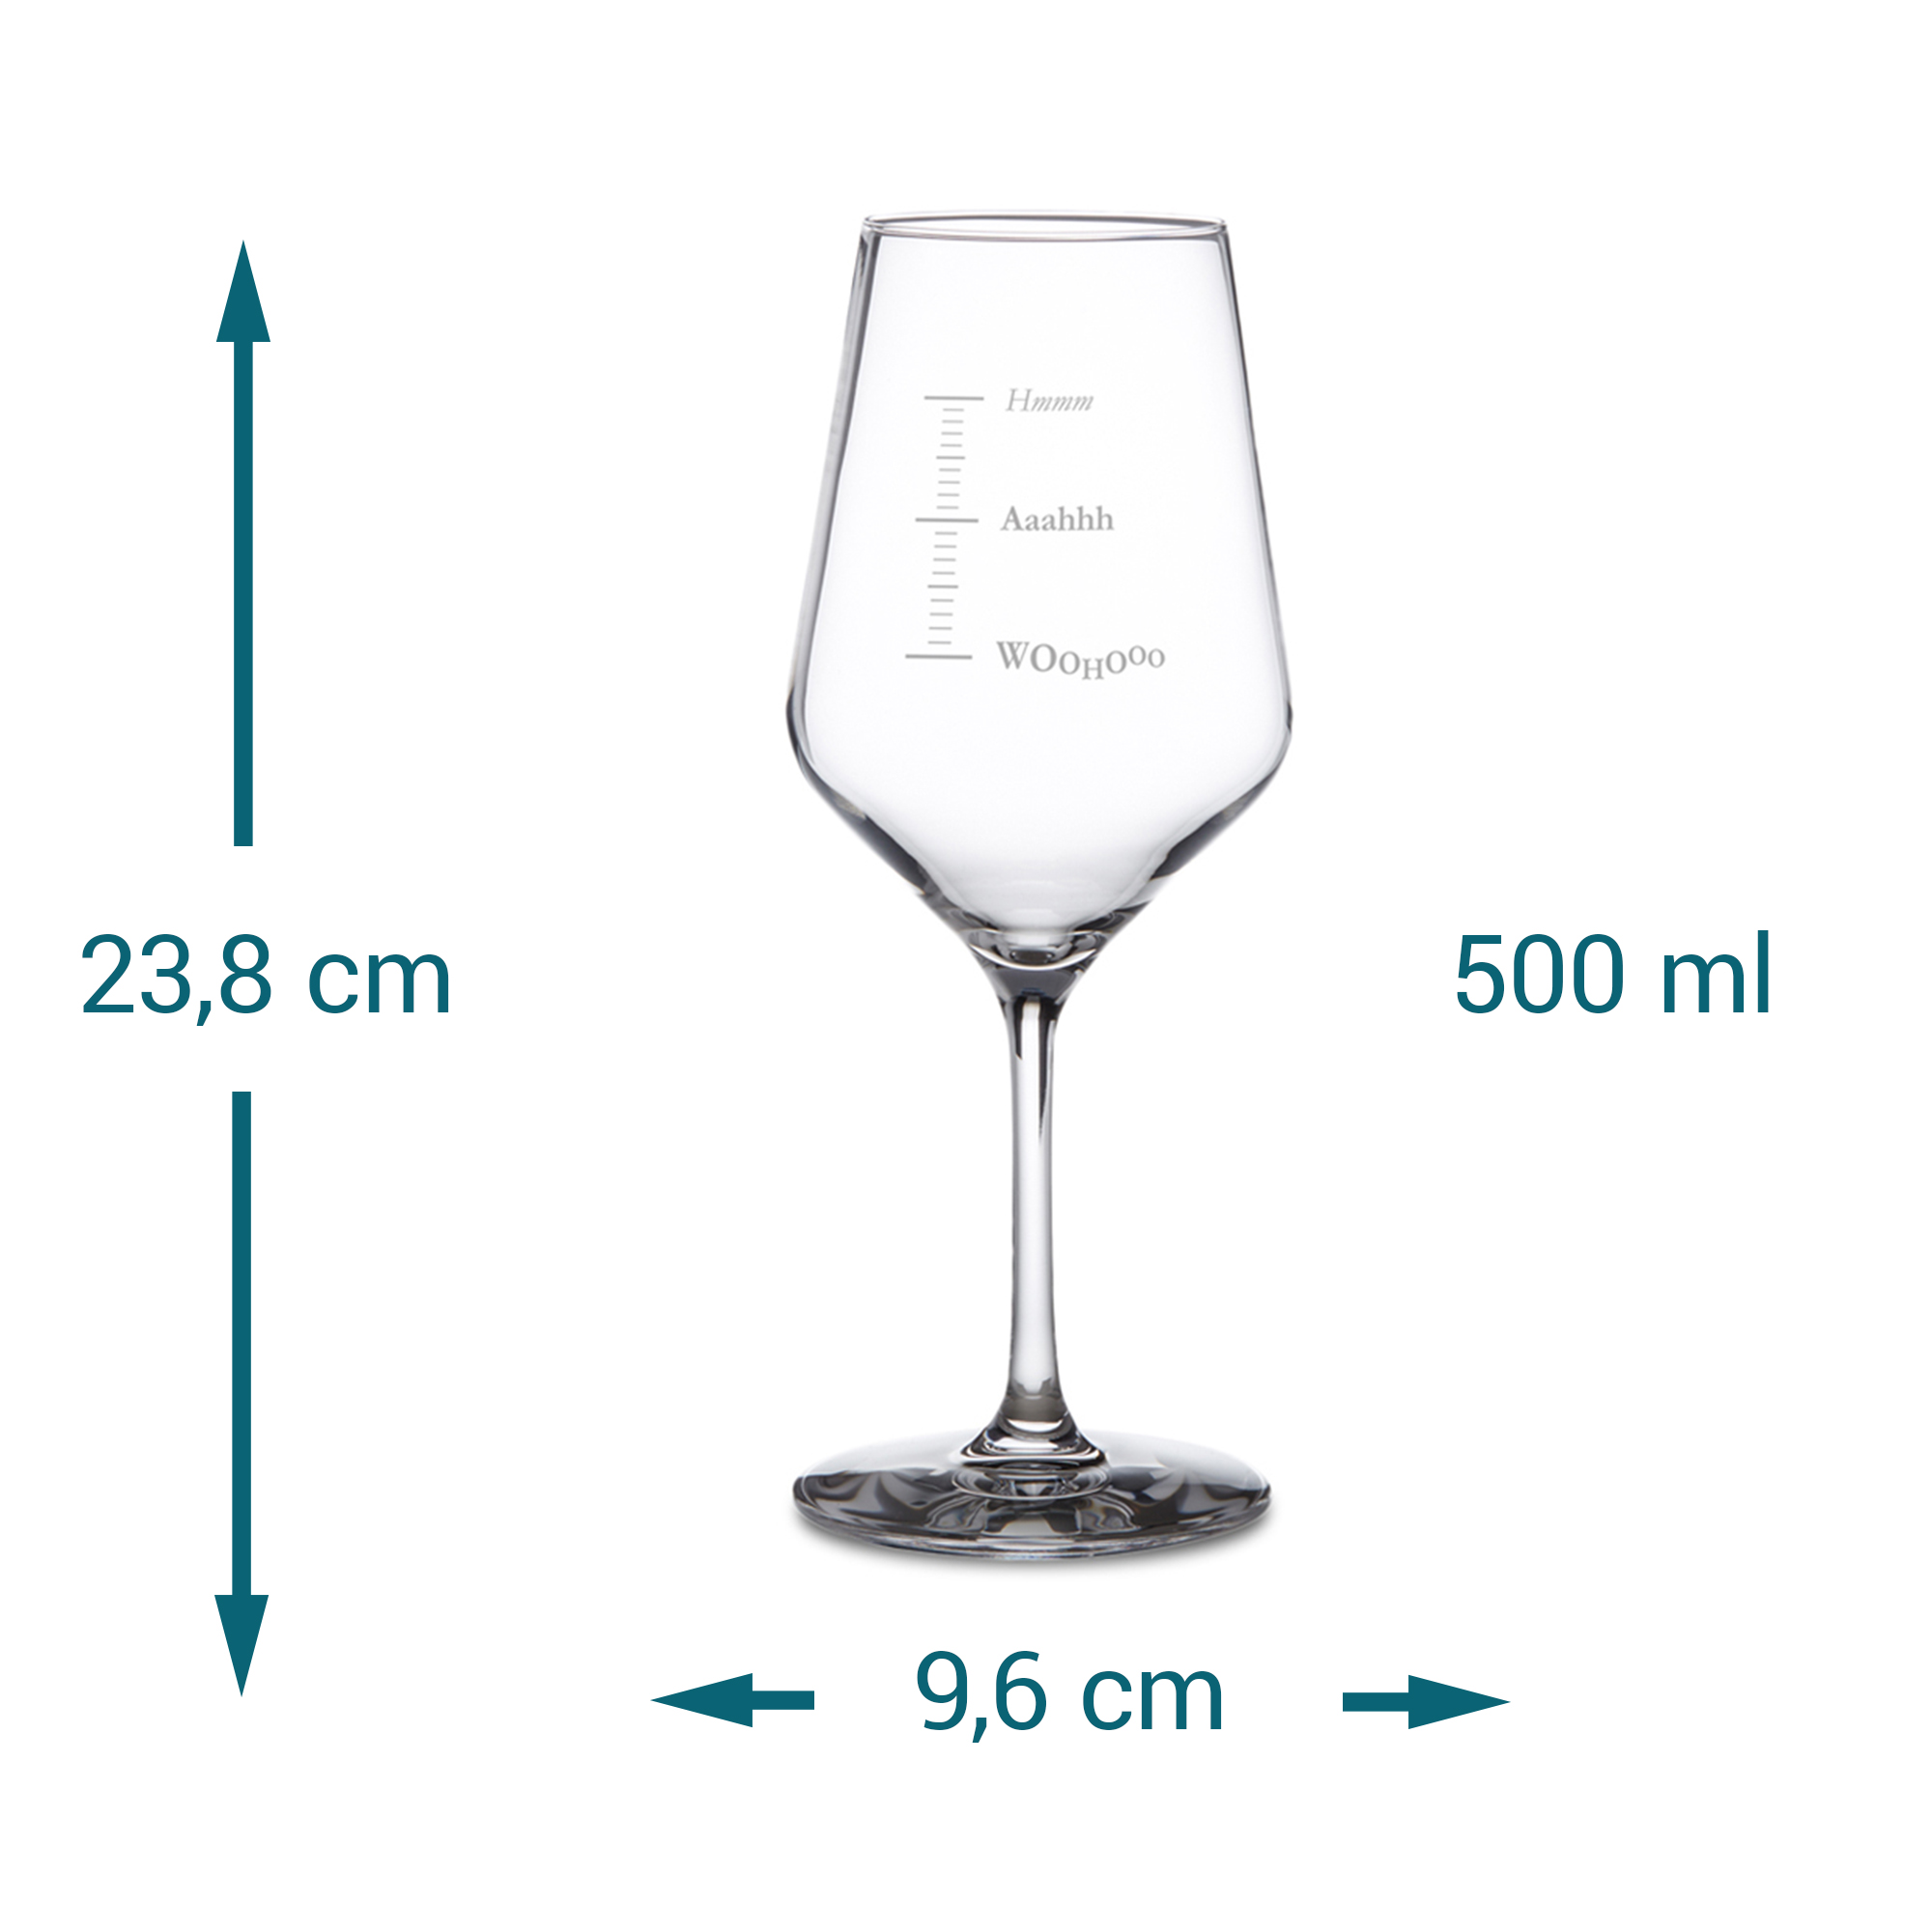 Weißweinglas mit Gravur - Woohooo 3284 - 7